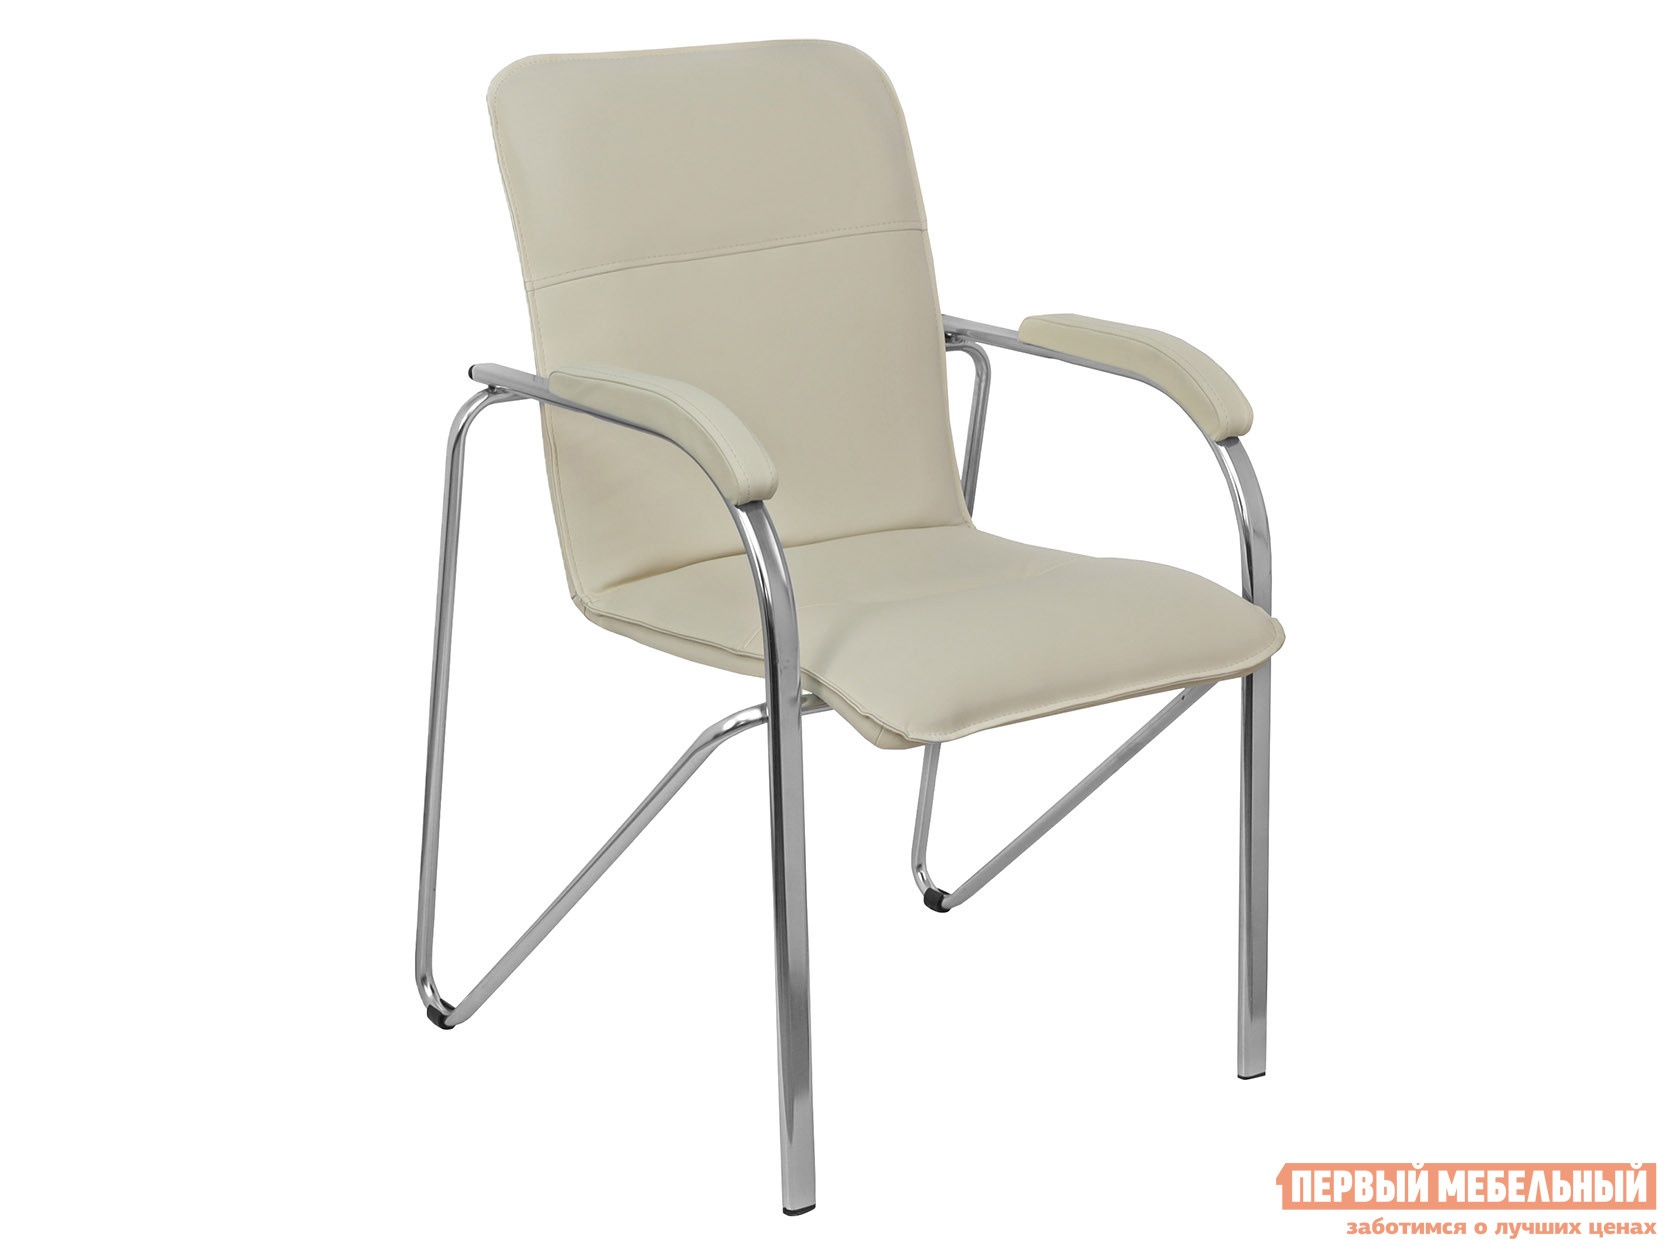 Офисный стул samba aks-1 кремовый, экокожа, мягкие preview 1